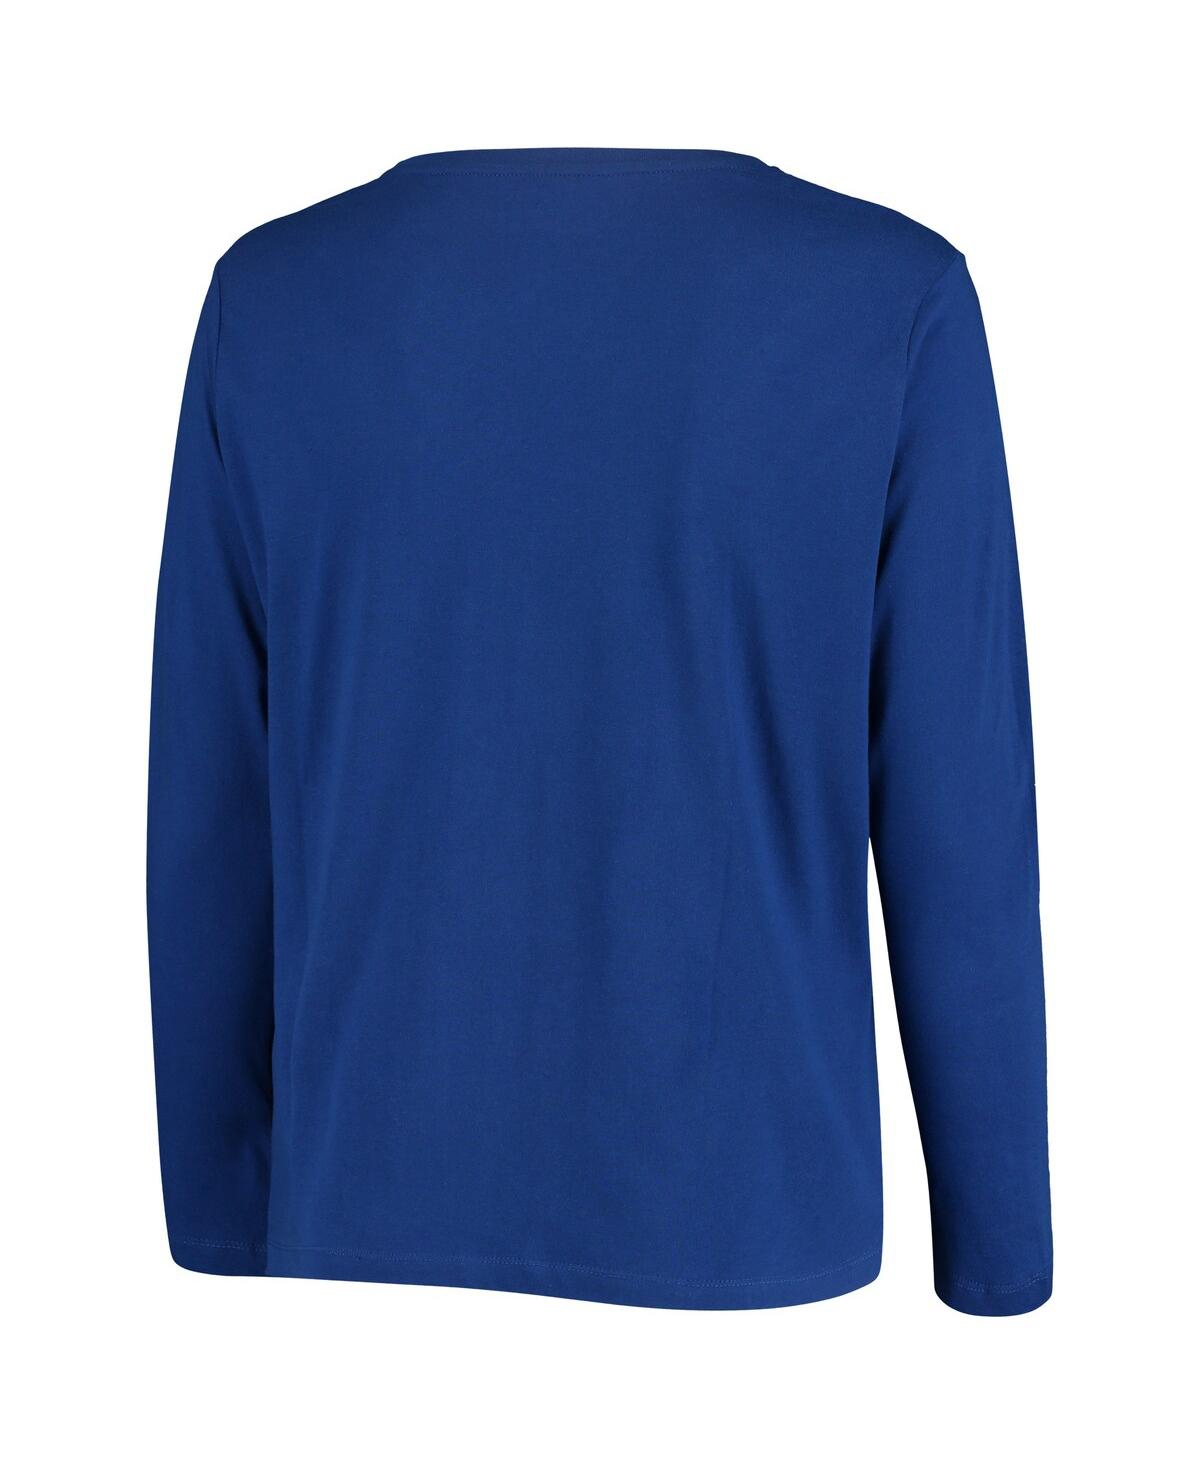 Shop Profile Women's Royal Kentucky Wildcats Plus Size Logo Long Sleeve T-shirt